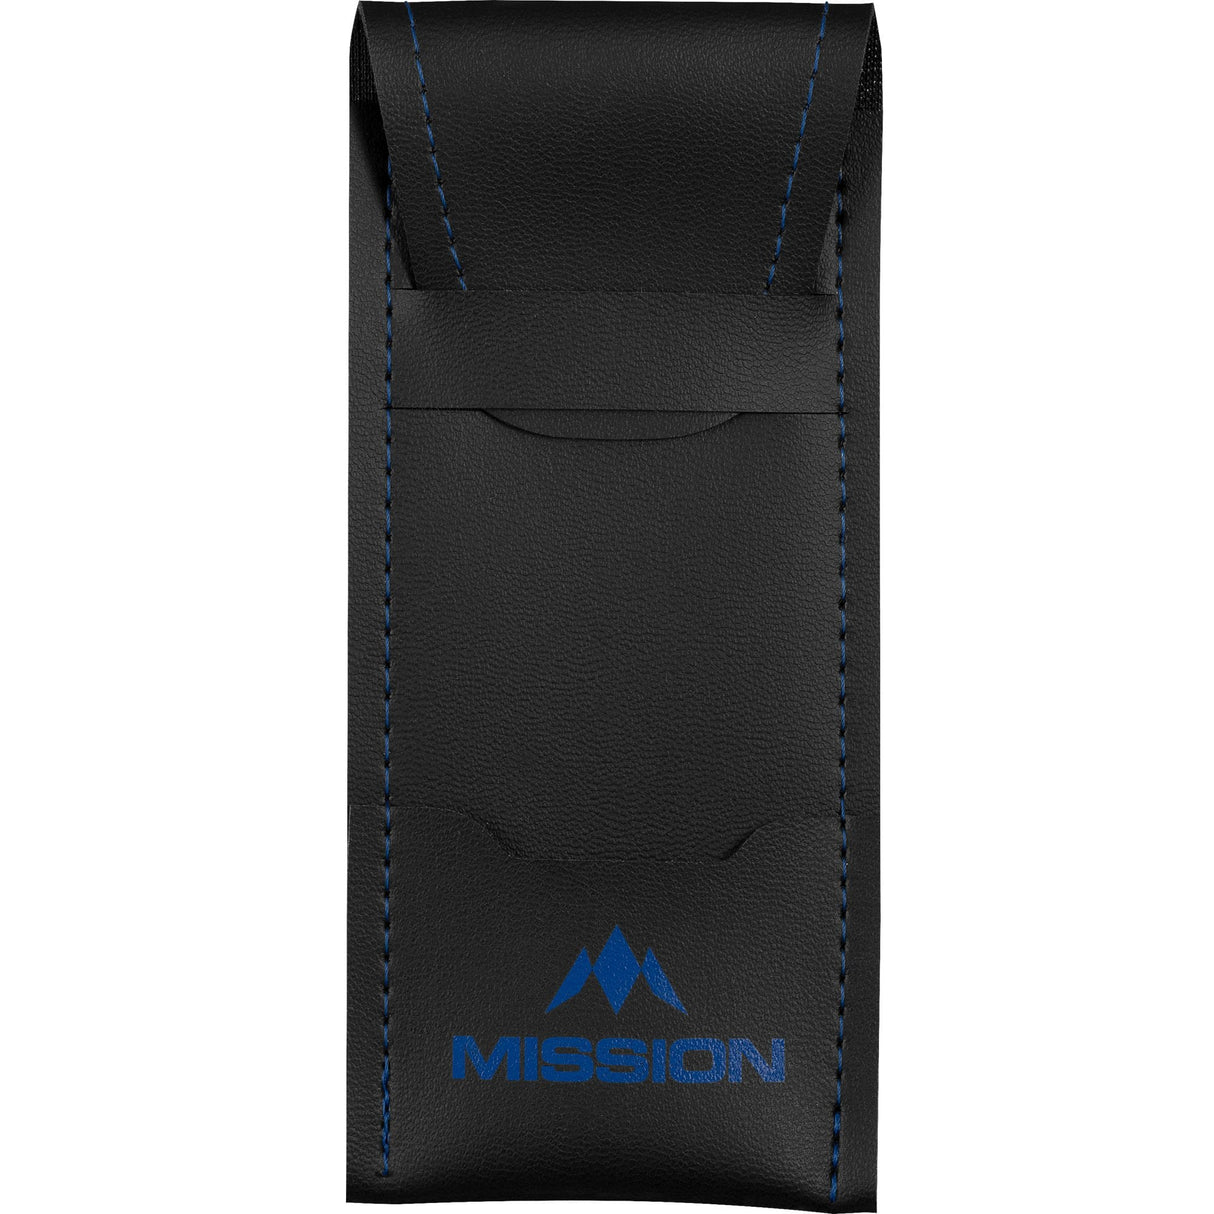 Mission Sport 8 Darts Case - Black Bar Wallet with Trim Blue